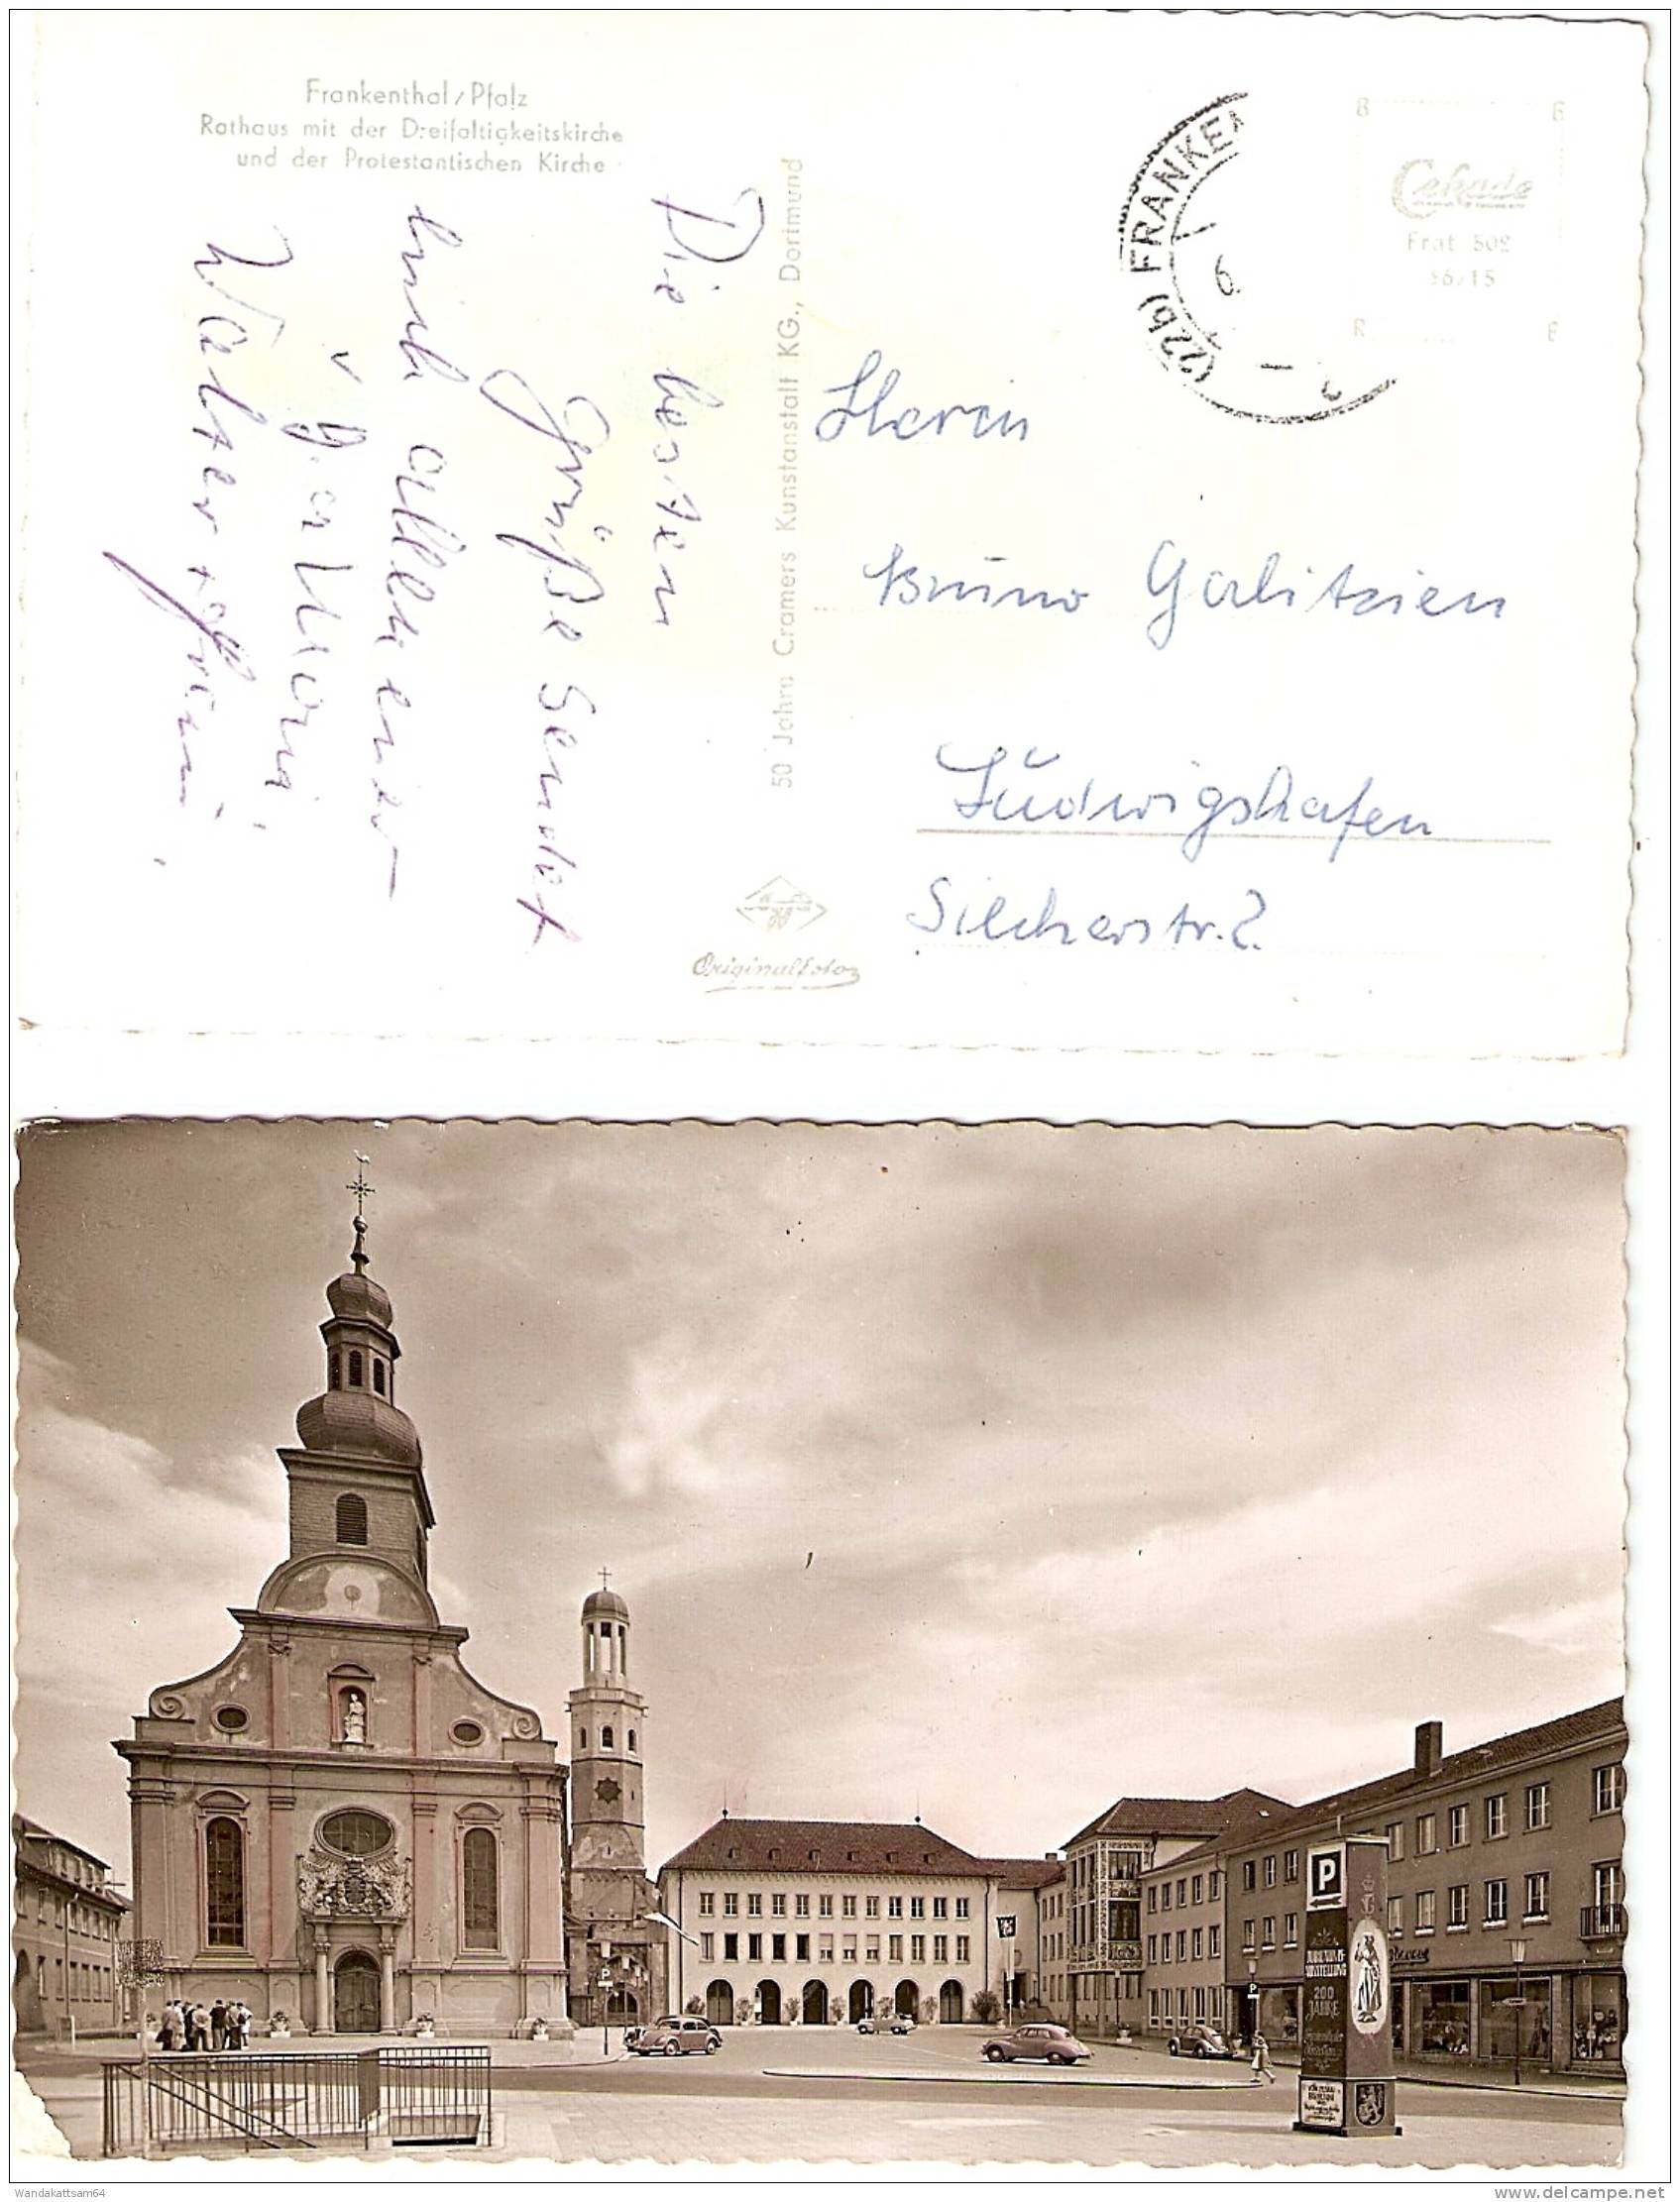 AK 5025615 Frankenthal/Pfalz Rathaus Mit Der Dreifaltigkeitskirche Und Der Protestantischen Kirche VW-Käfer 6. (22b) FRA - Frankenthal